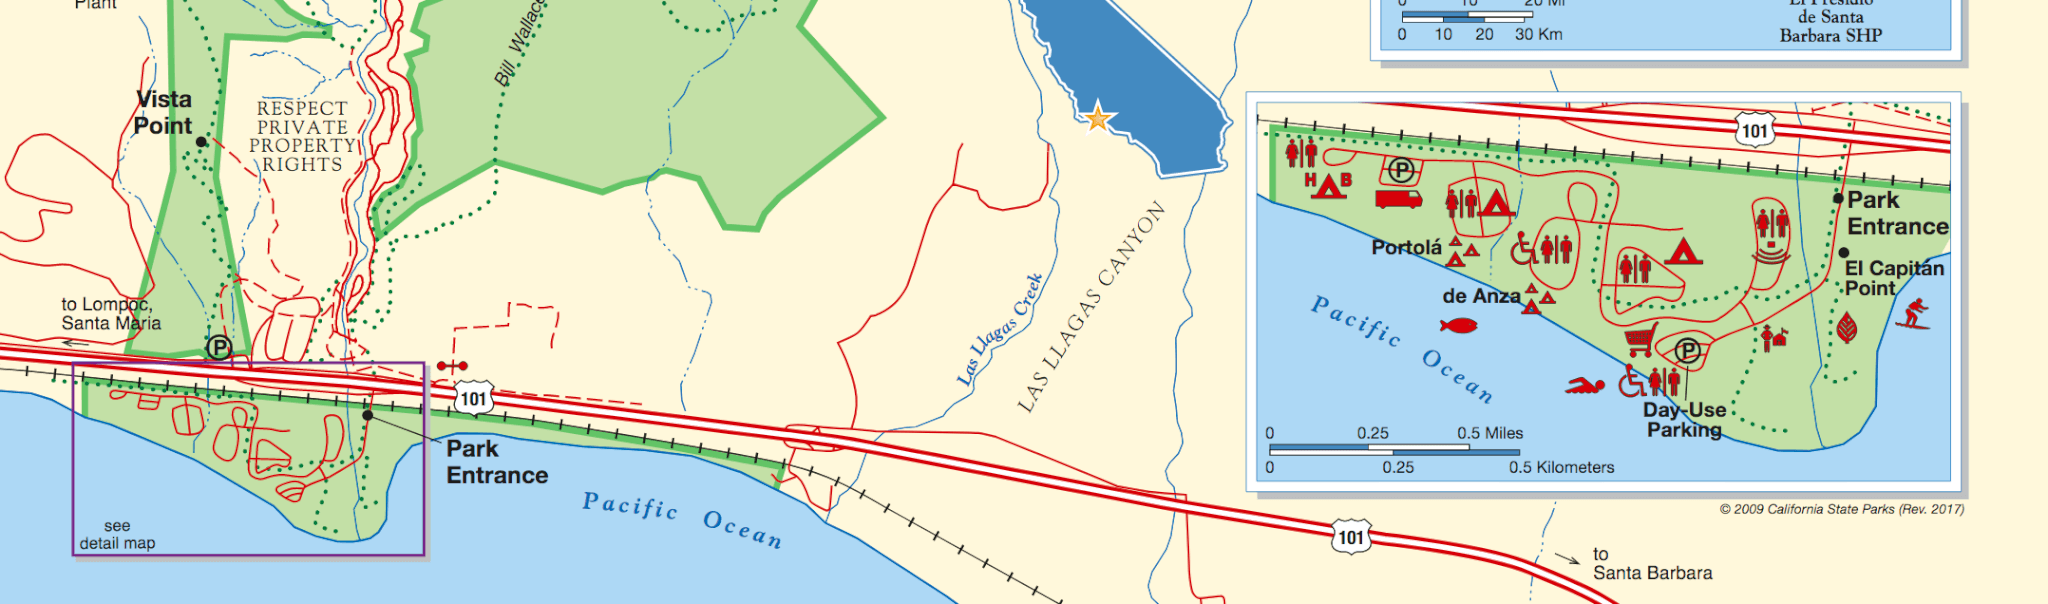 El Capitan State Beach Hike & Bike Map